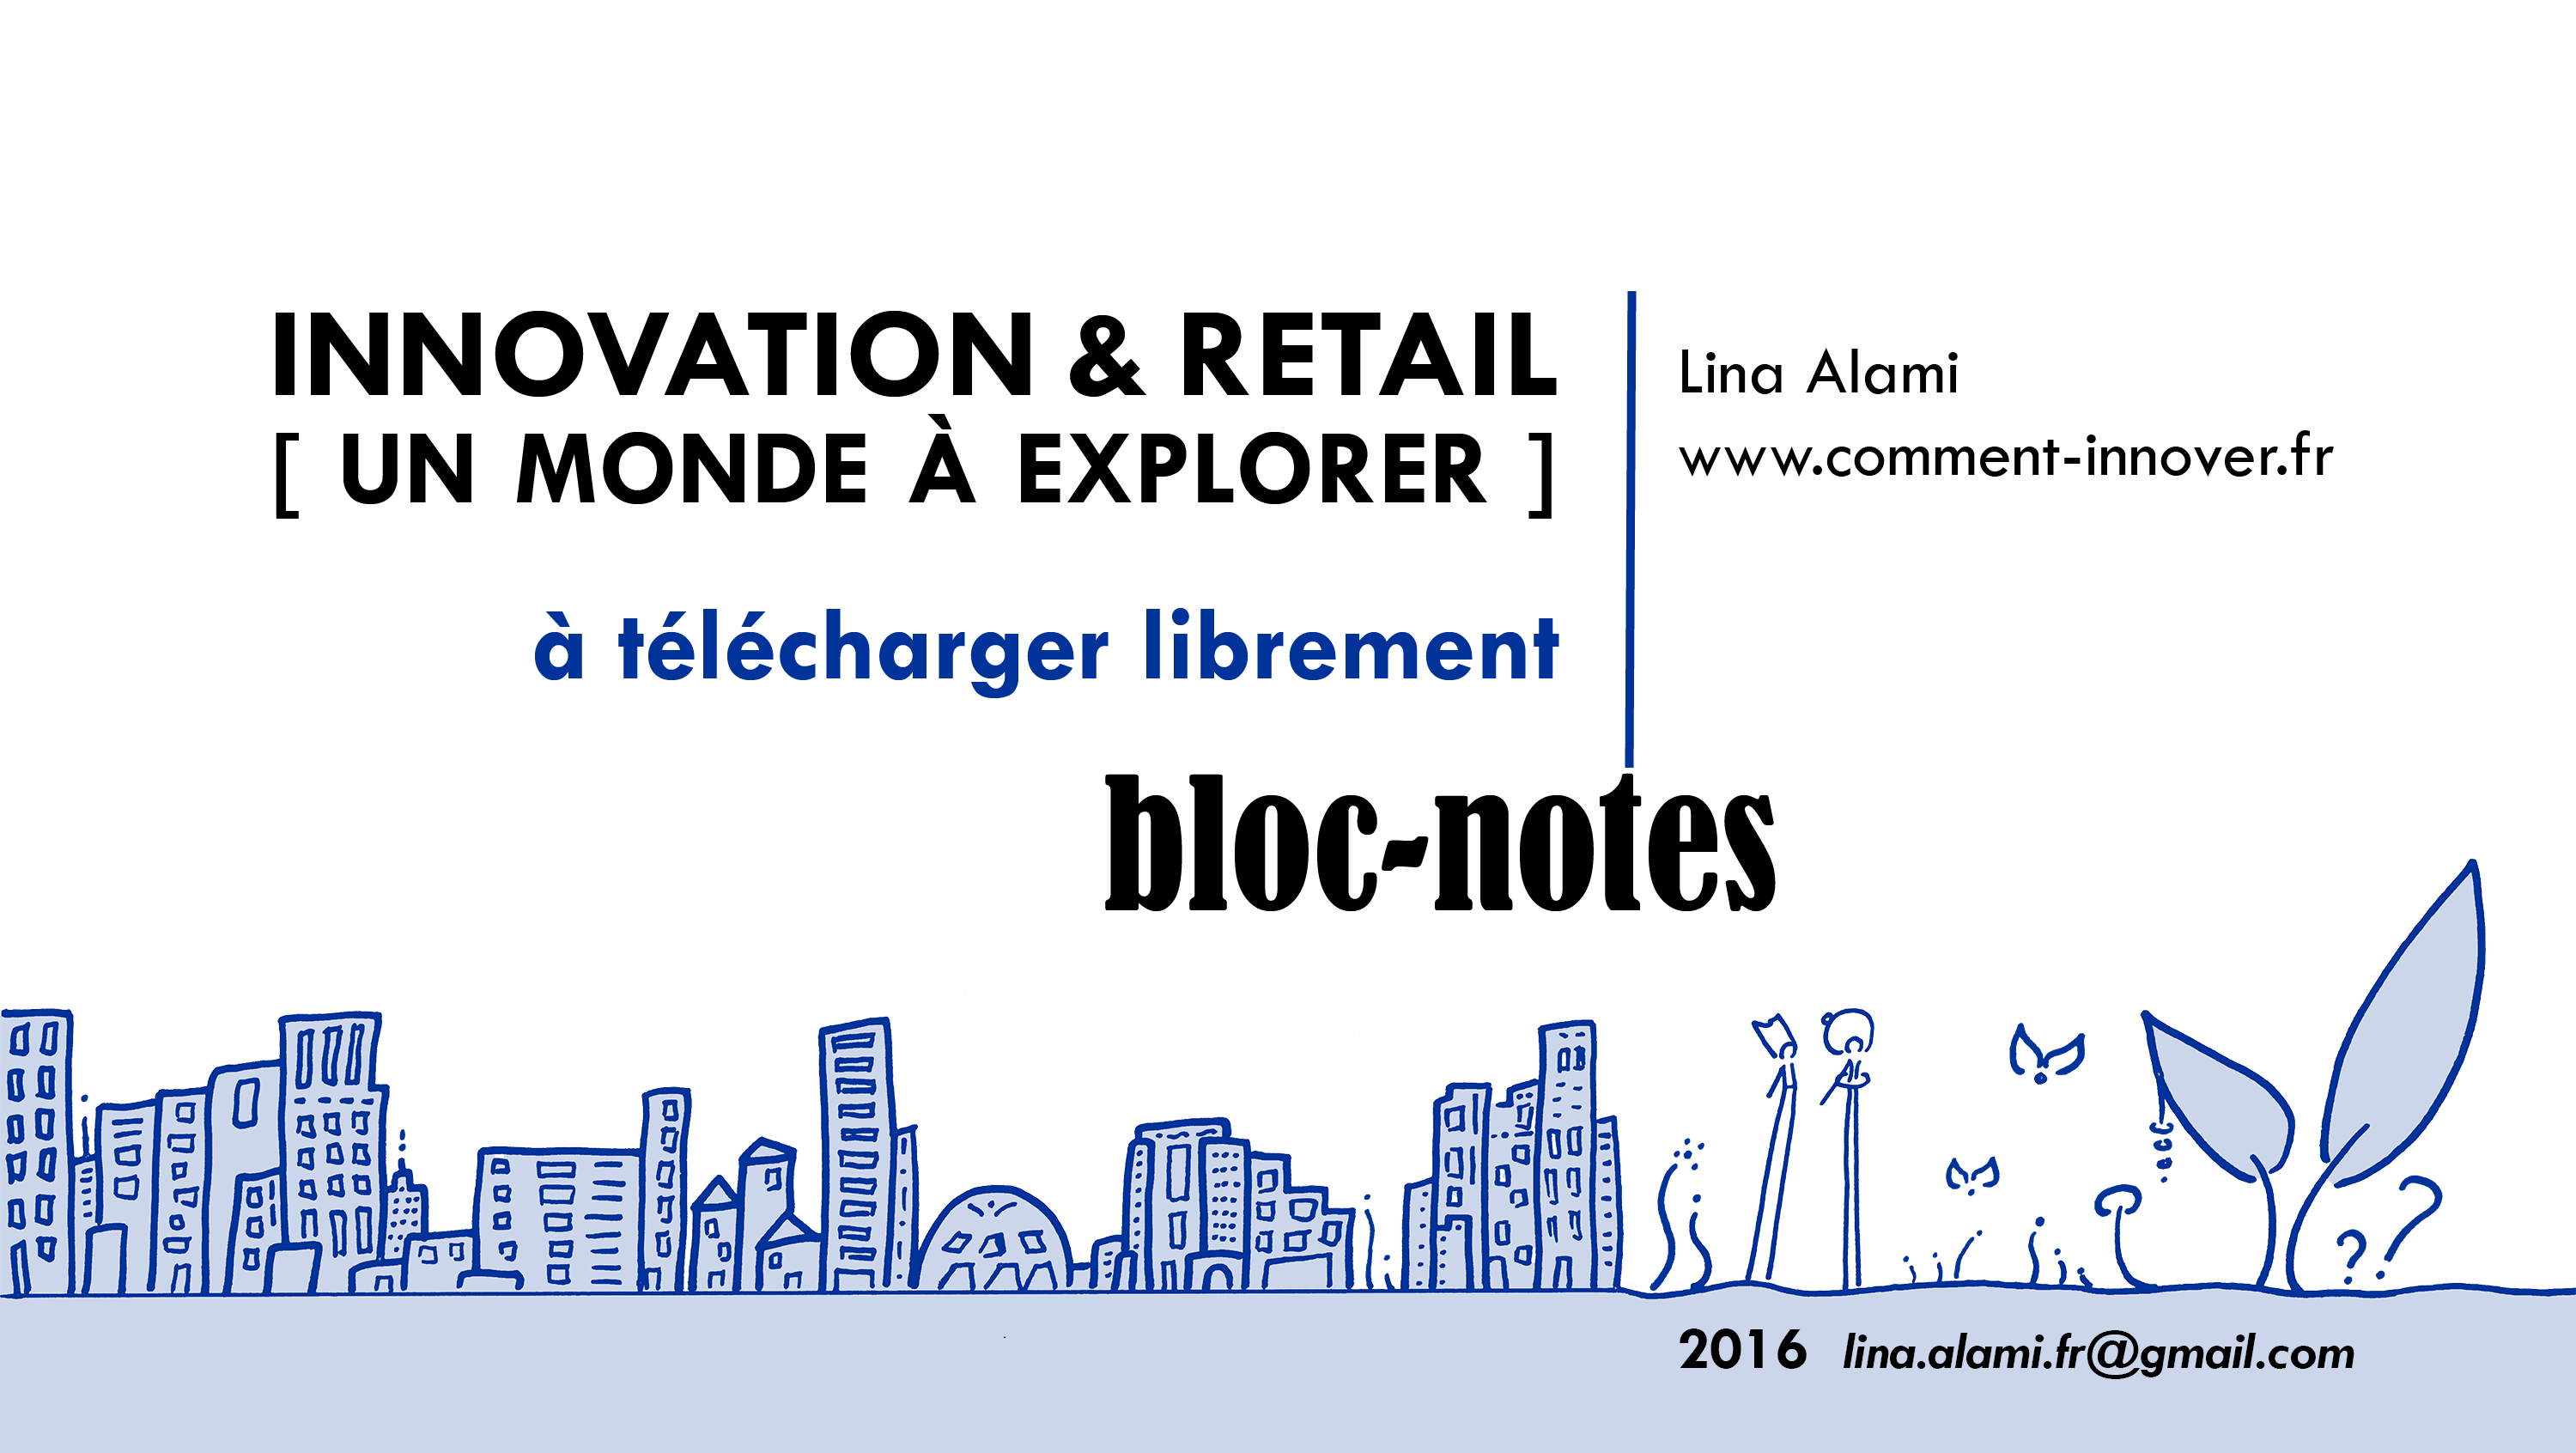 Innovation & Retail : une étude de Lina Alami